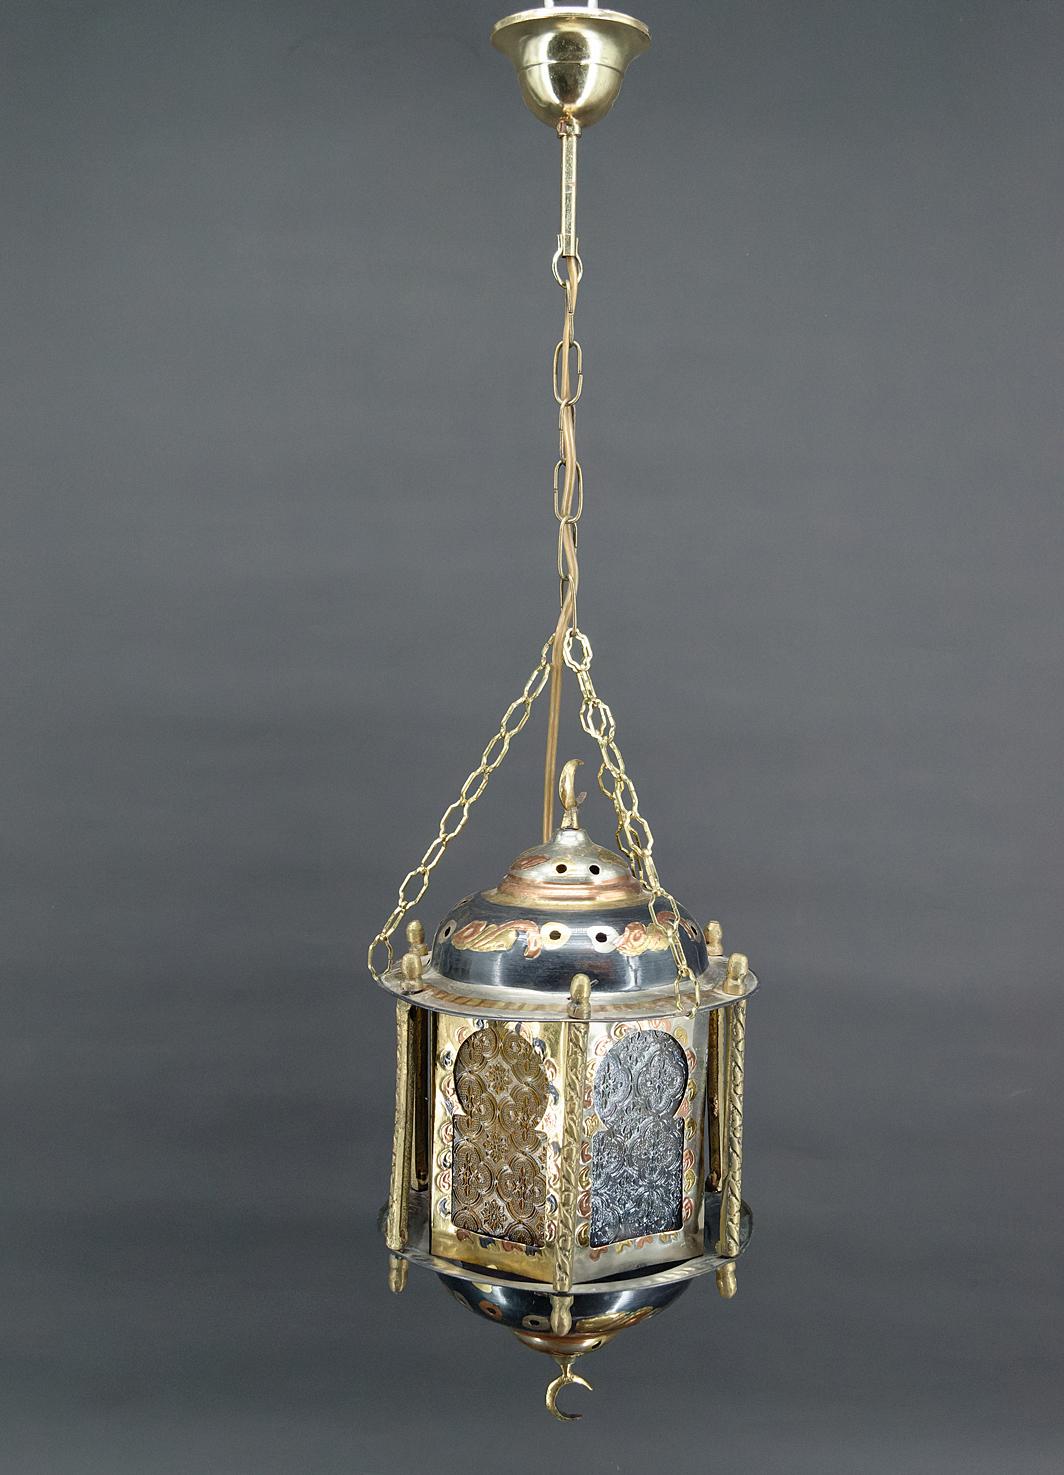 Lanterne mauresque en laiton et verre coloré.
Style mauresque / islamique / bohème.
Afrique du Nord, 20e siècle.

En bon état.

Dimensions :
hauteur 86 cm
diamètre 26 cm